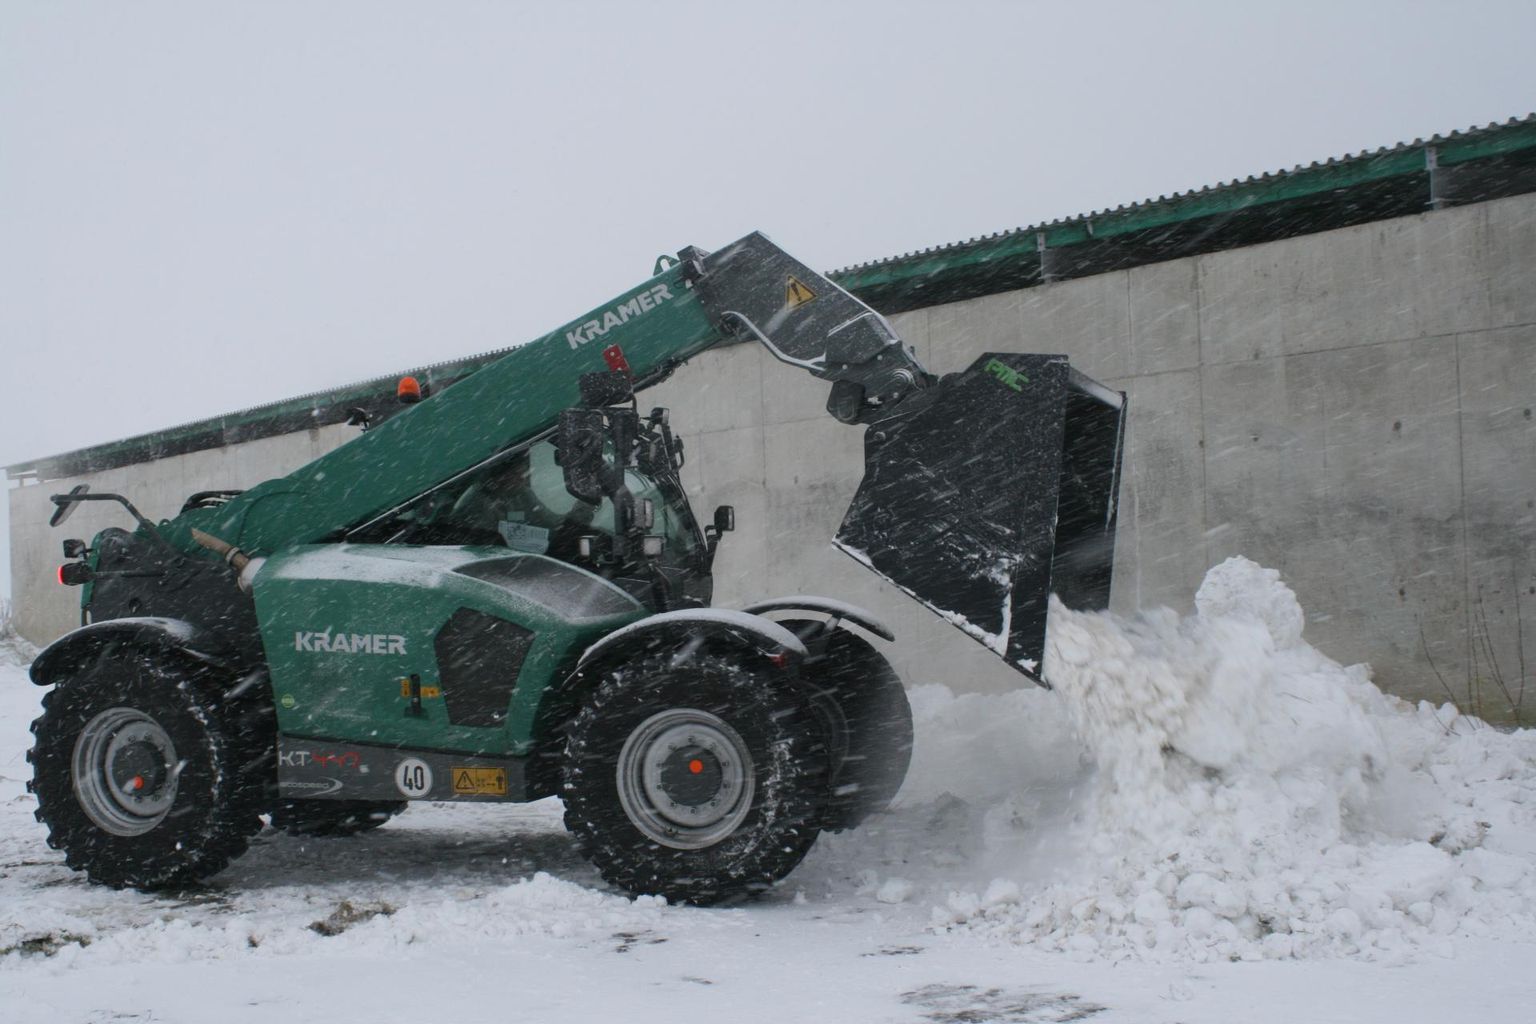 Krameri laaduriperekonna suurim esindaja KT 447 sai Tori lähistel Piistaoja katsetalus demopäeval proovida üha paksenevas lumes rassimist.